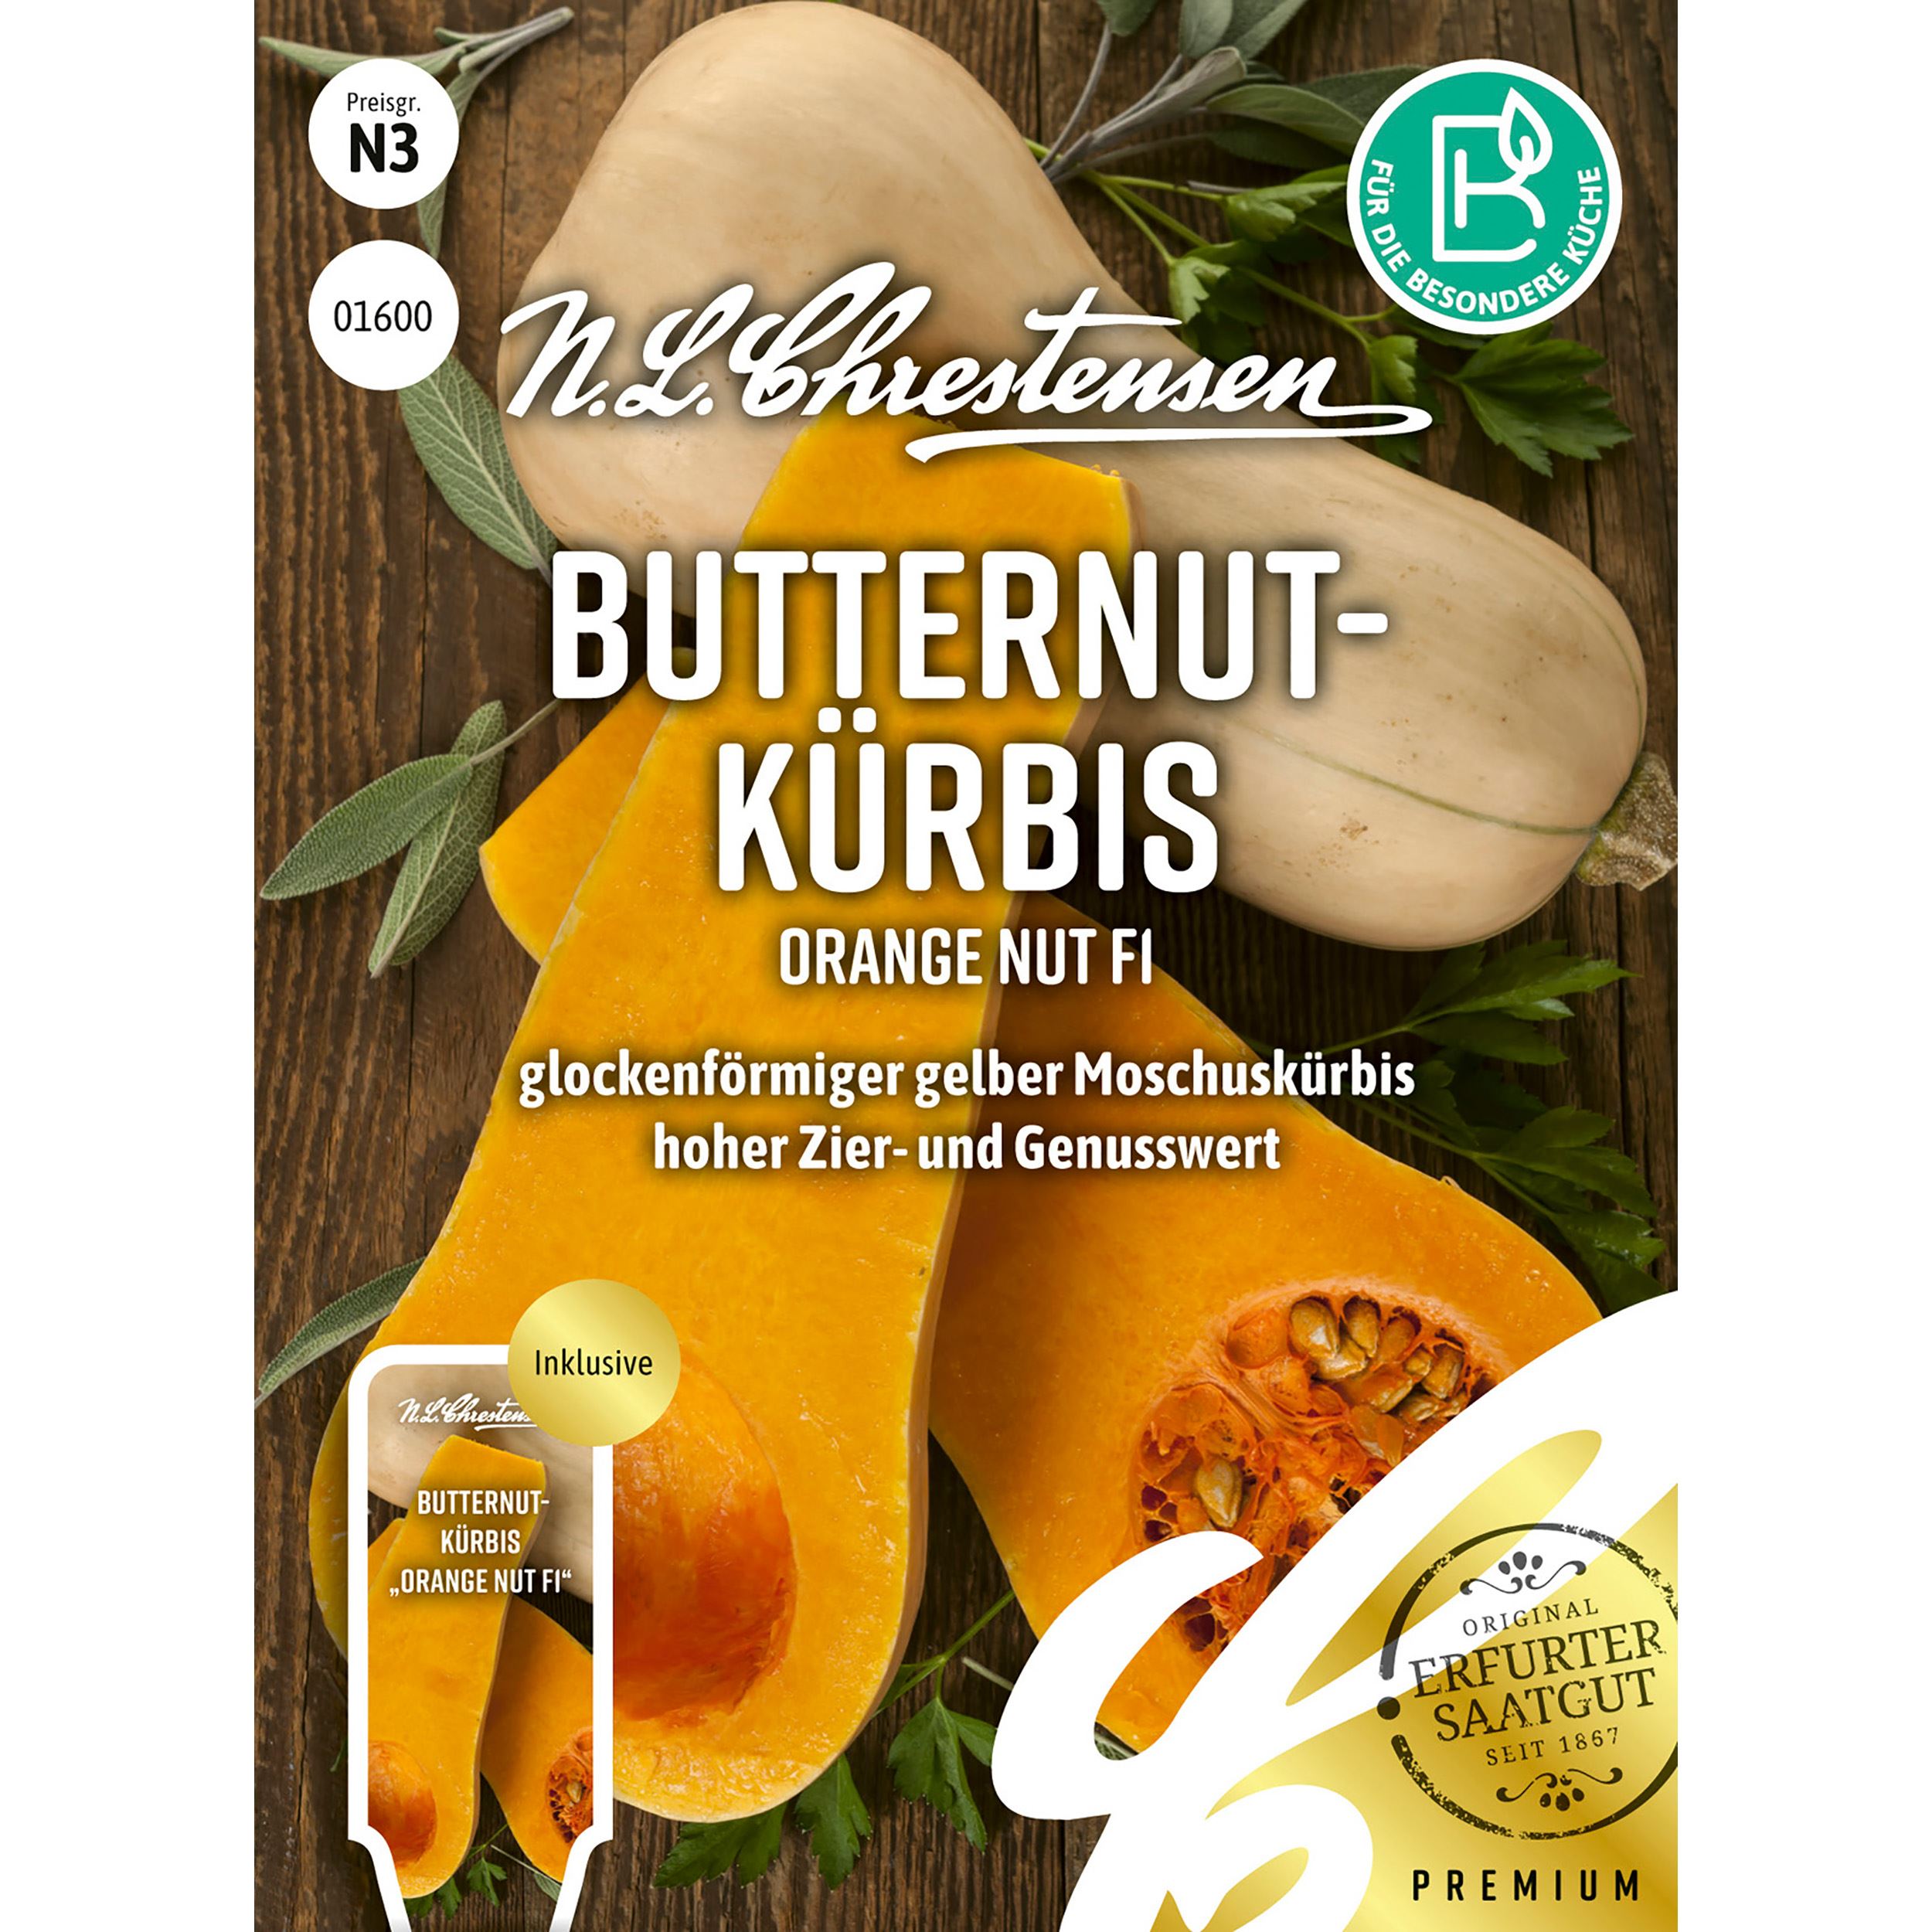 Butternutkürbis Orange Nut F1